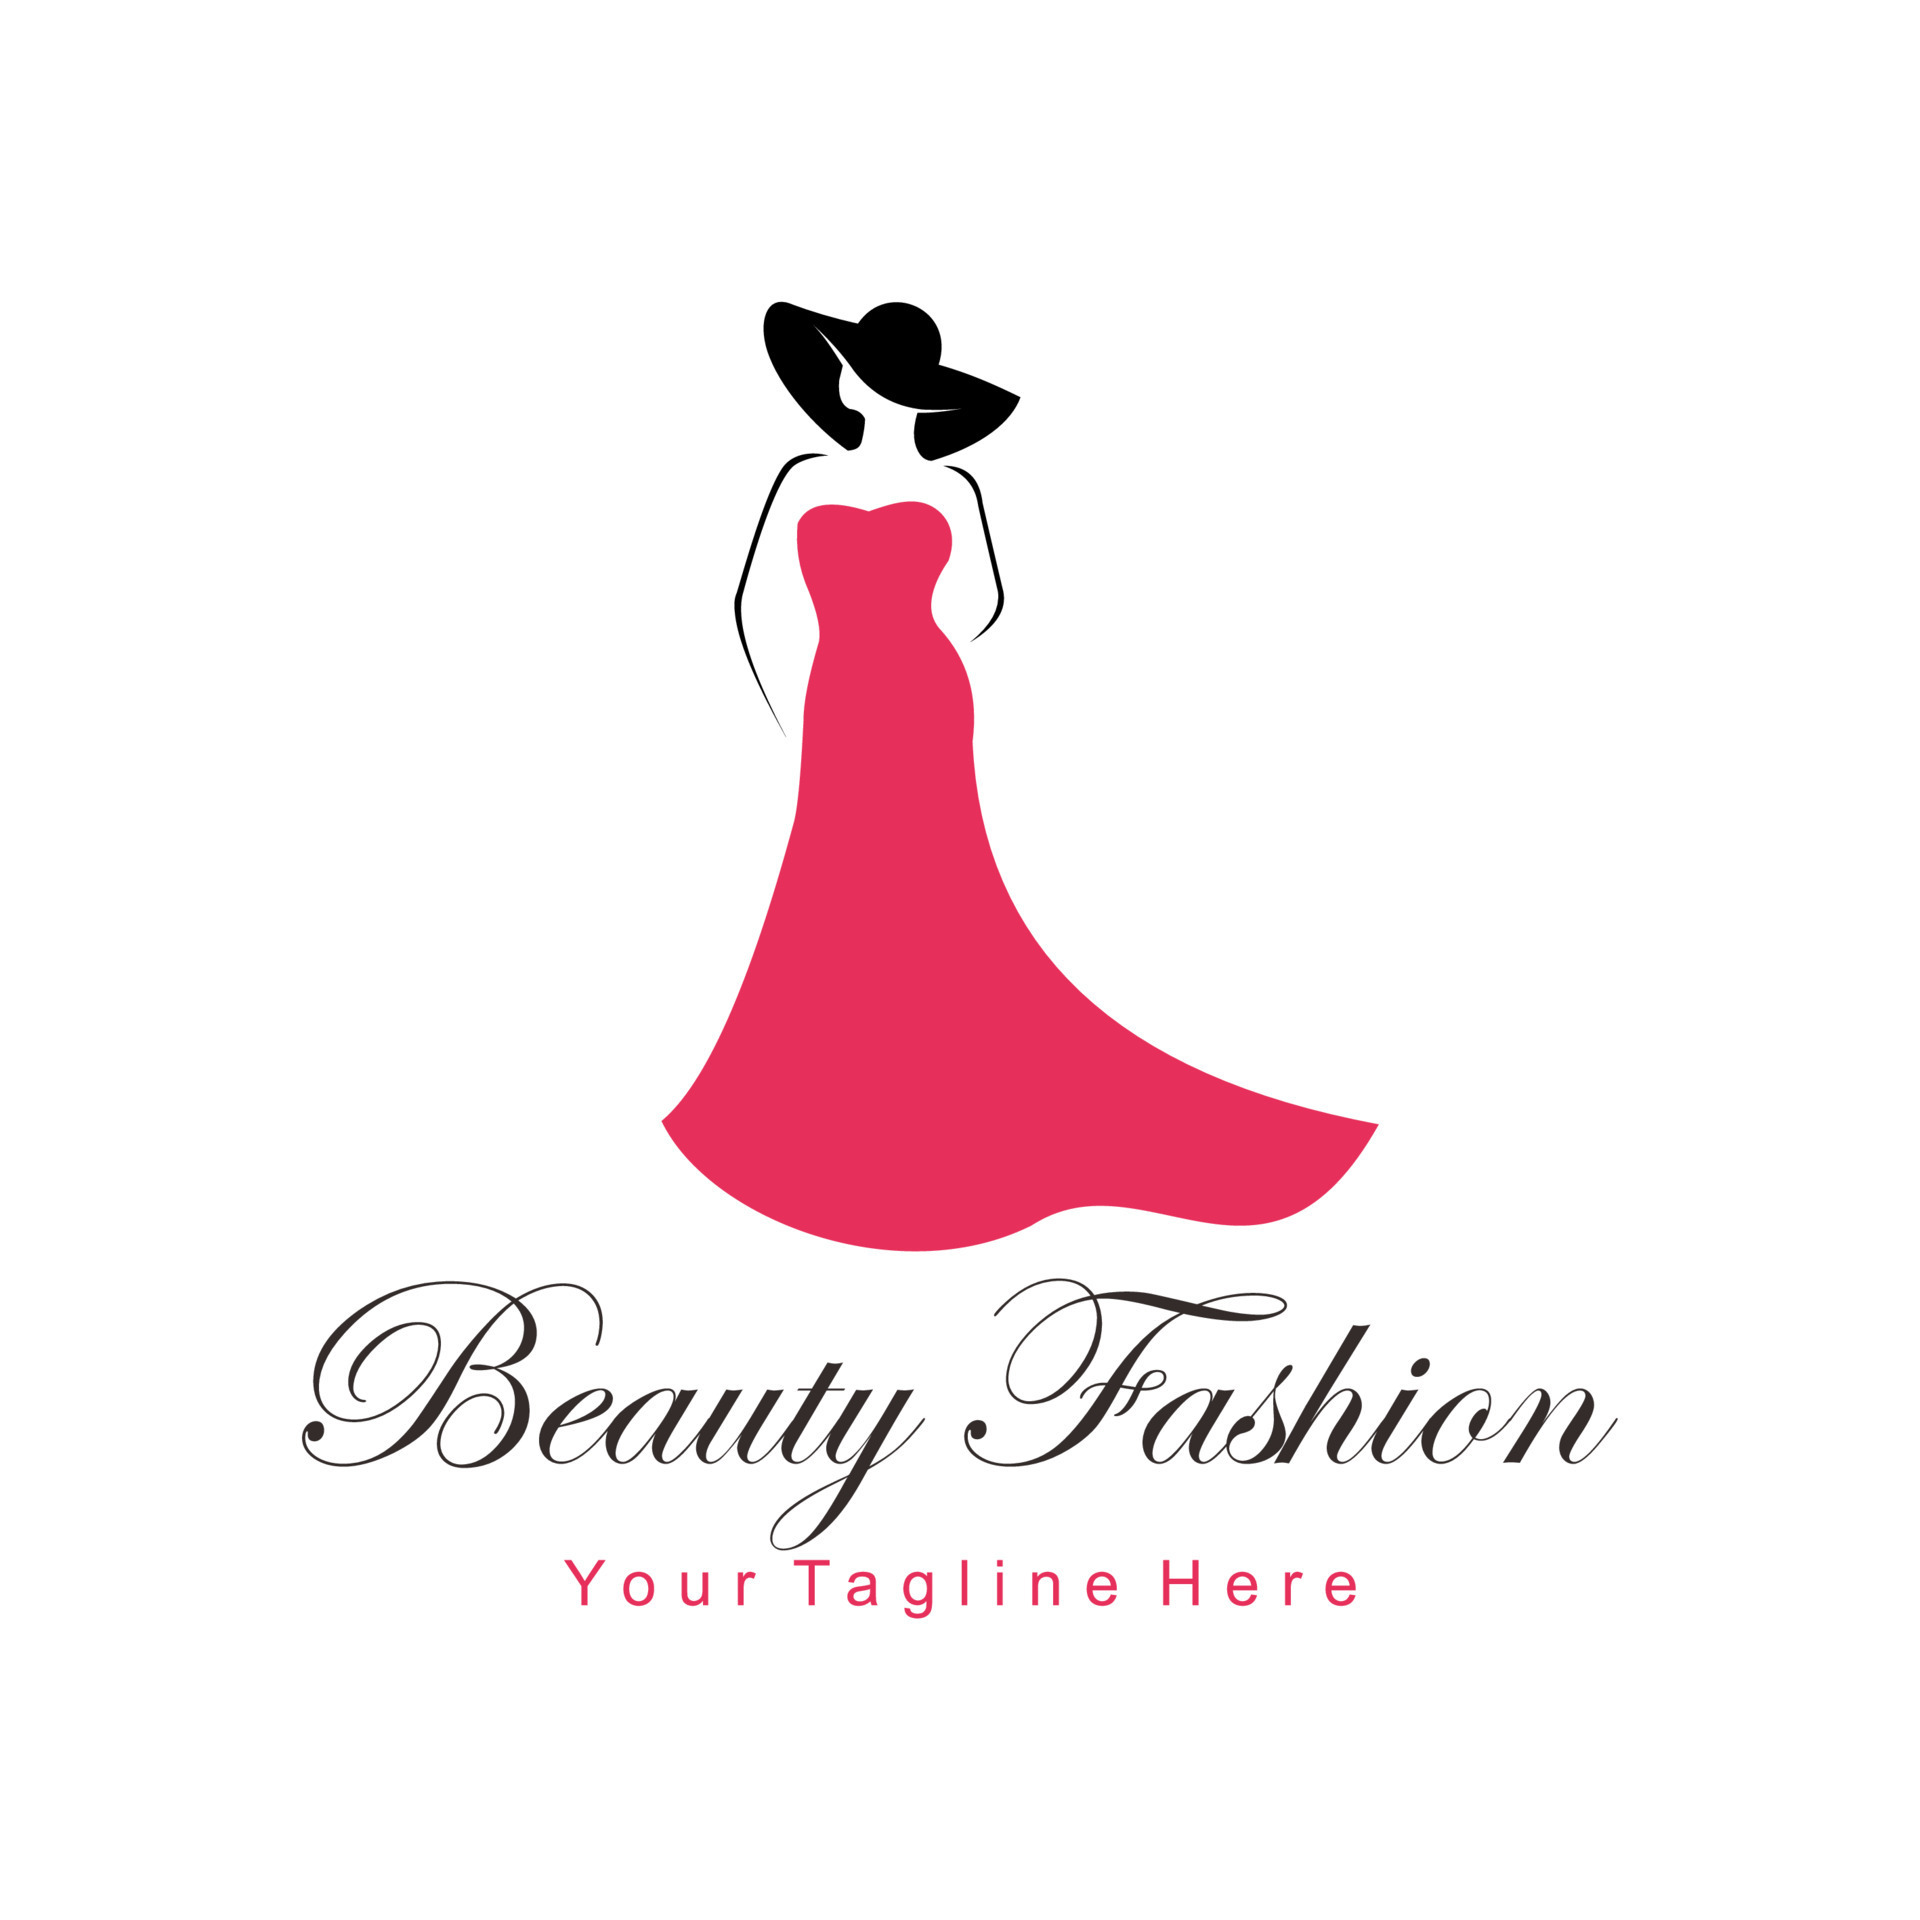 beauty fashion logo 8222183 Vector Art at Vecteezy